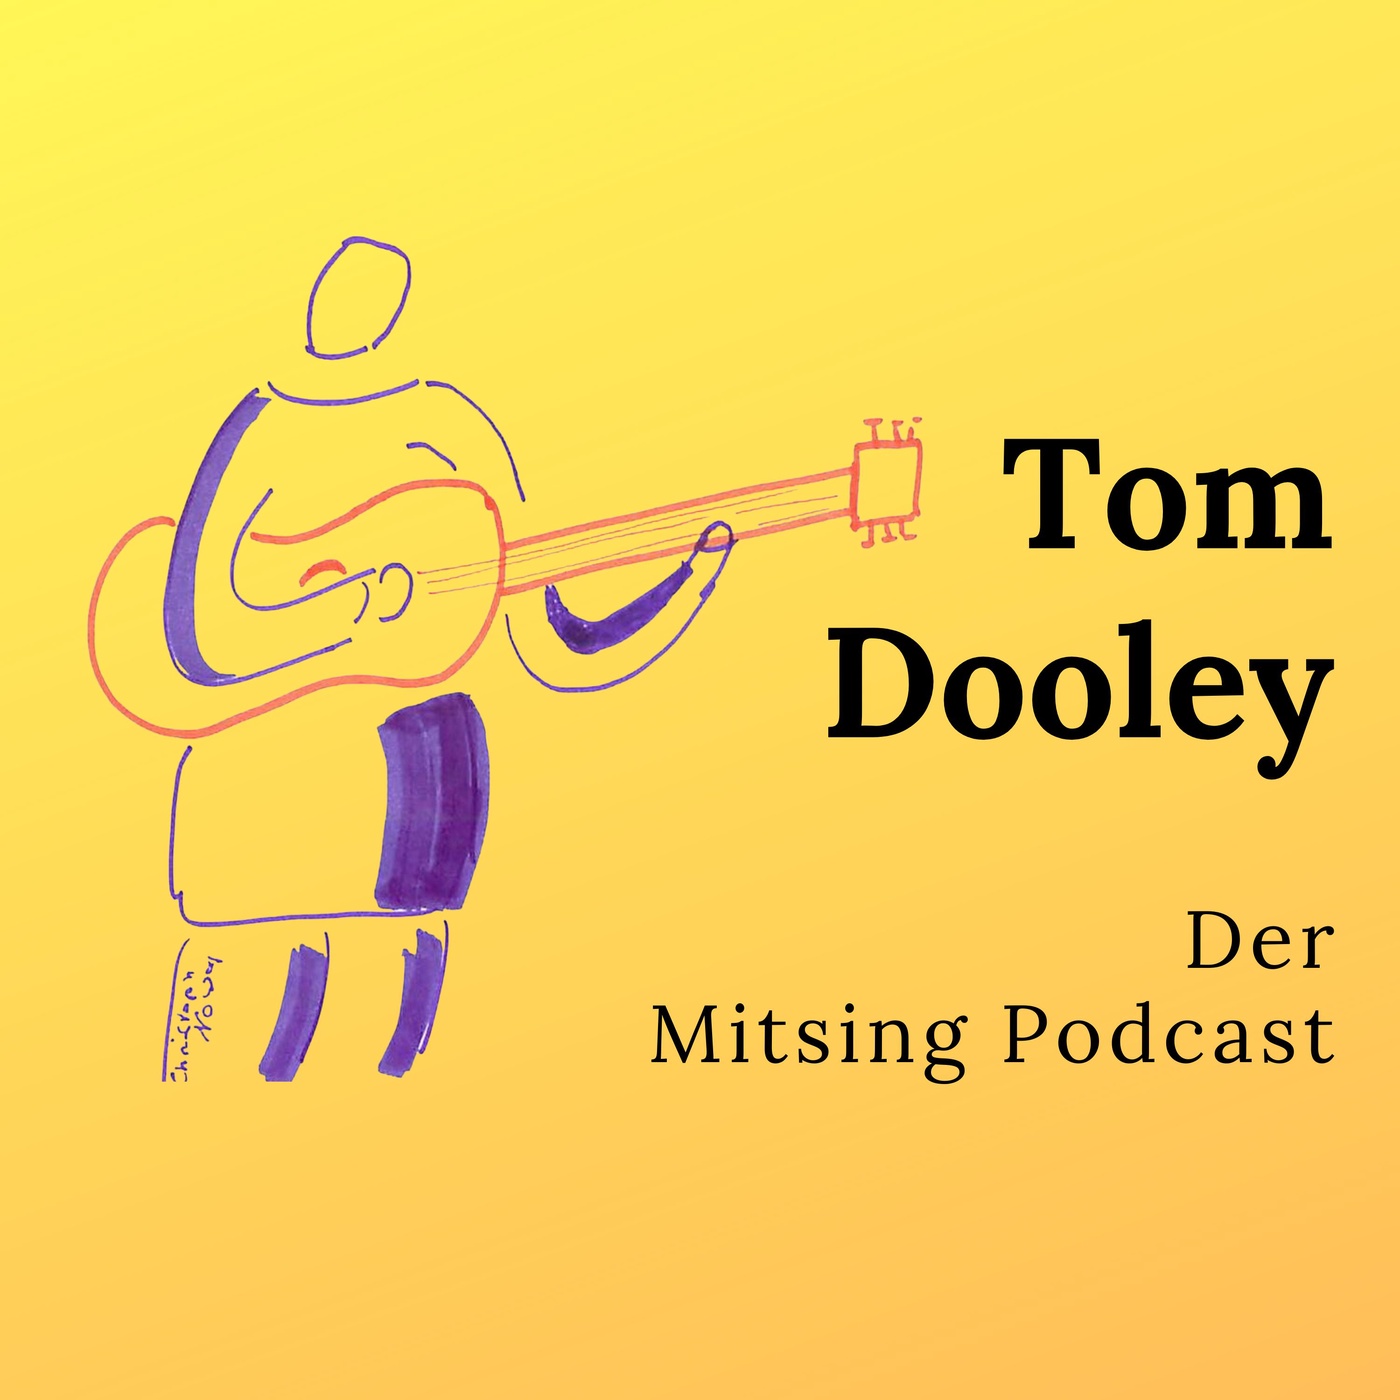 Tom Dooley